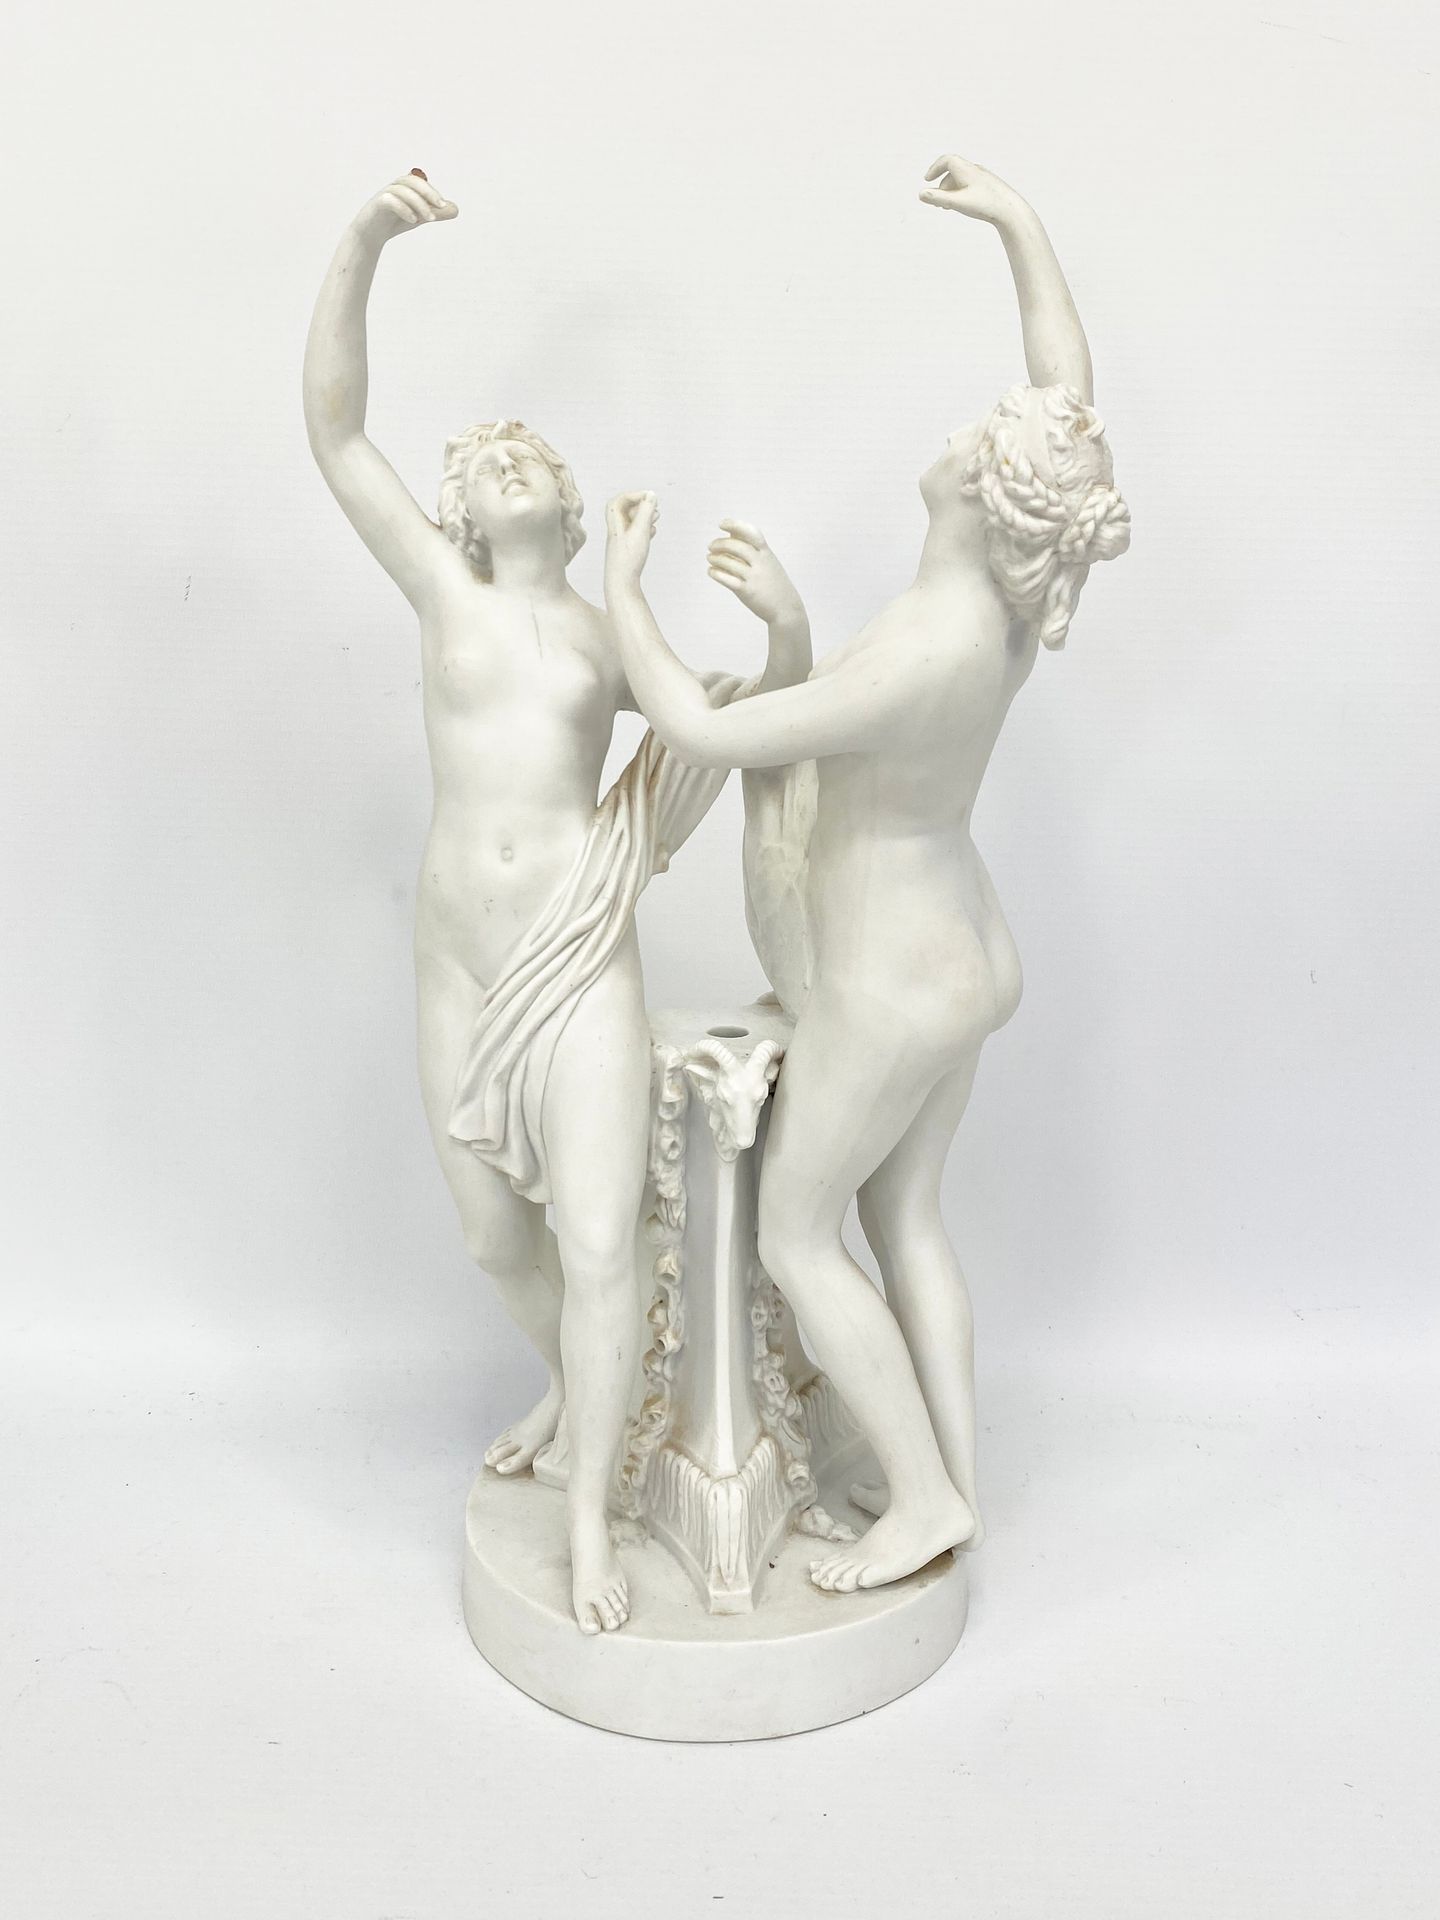 Null Según Louis-Simon BOIZOT (1743-1809)

Ninfas bailando al estilo ateniense

&hellip;